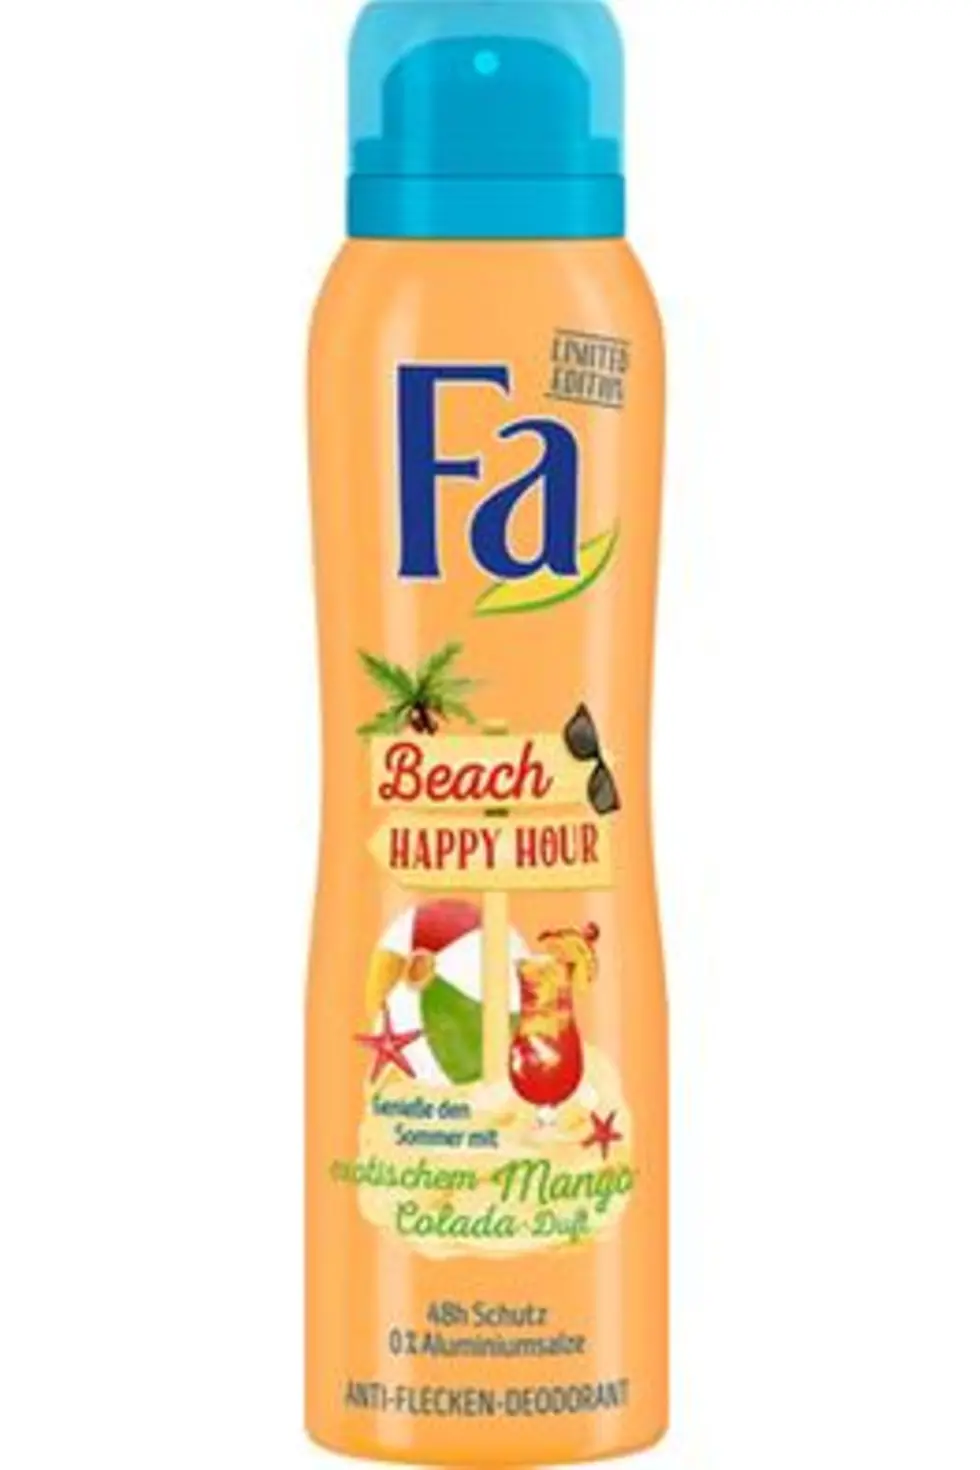 Fa Beach Happy Hour Anti-Flecken-Deodorant mit exotischem Mango-Colada-Duft – ohne Aluminiumsalze